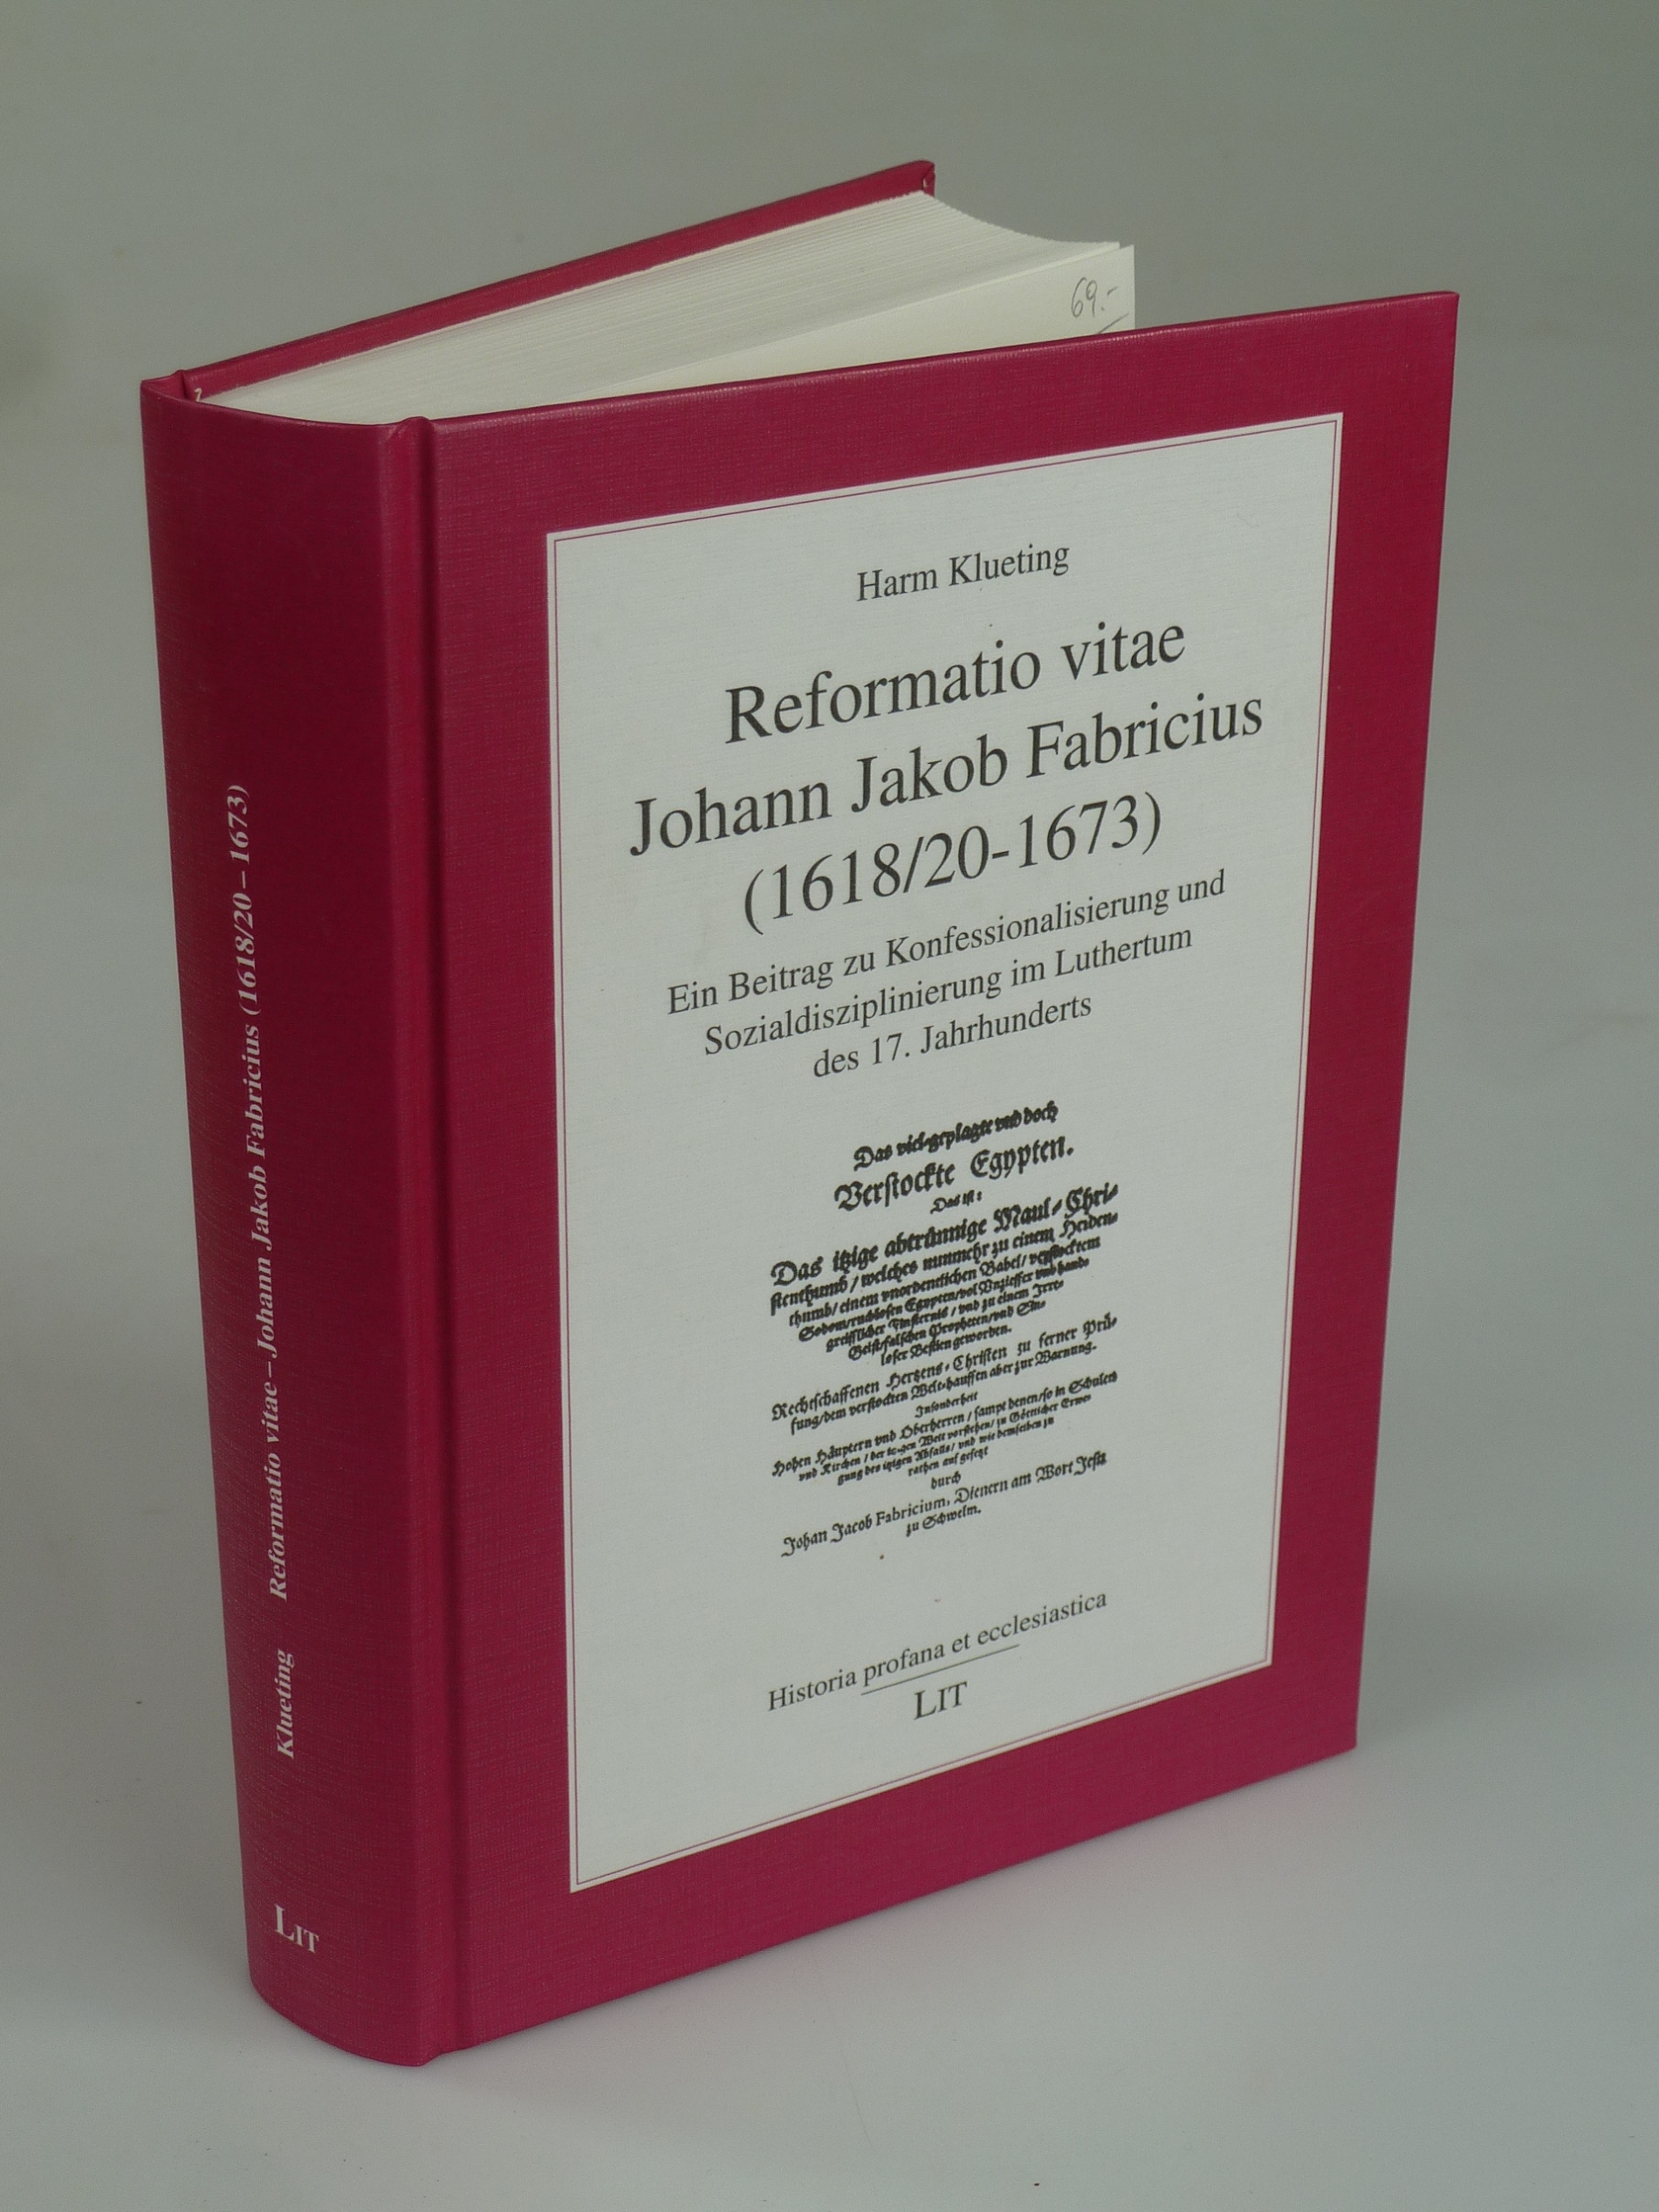 Reformatio vitae Johann Jakob Frabricius (1618/20-1673). - KLUETING, Harm.